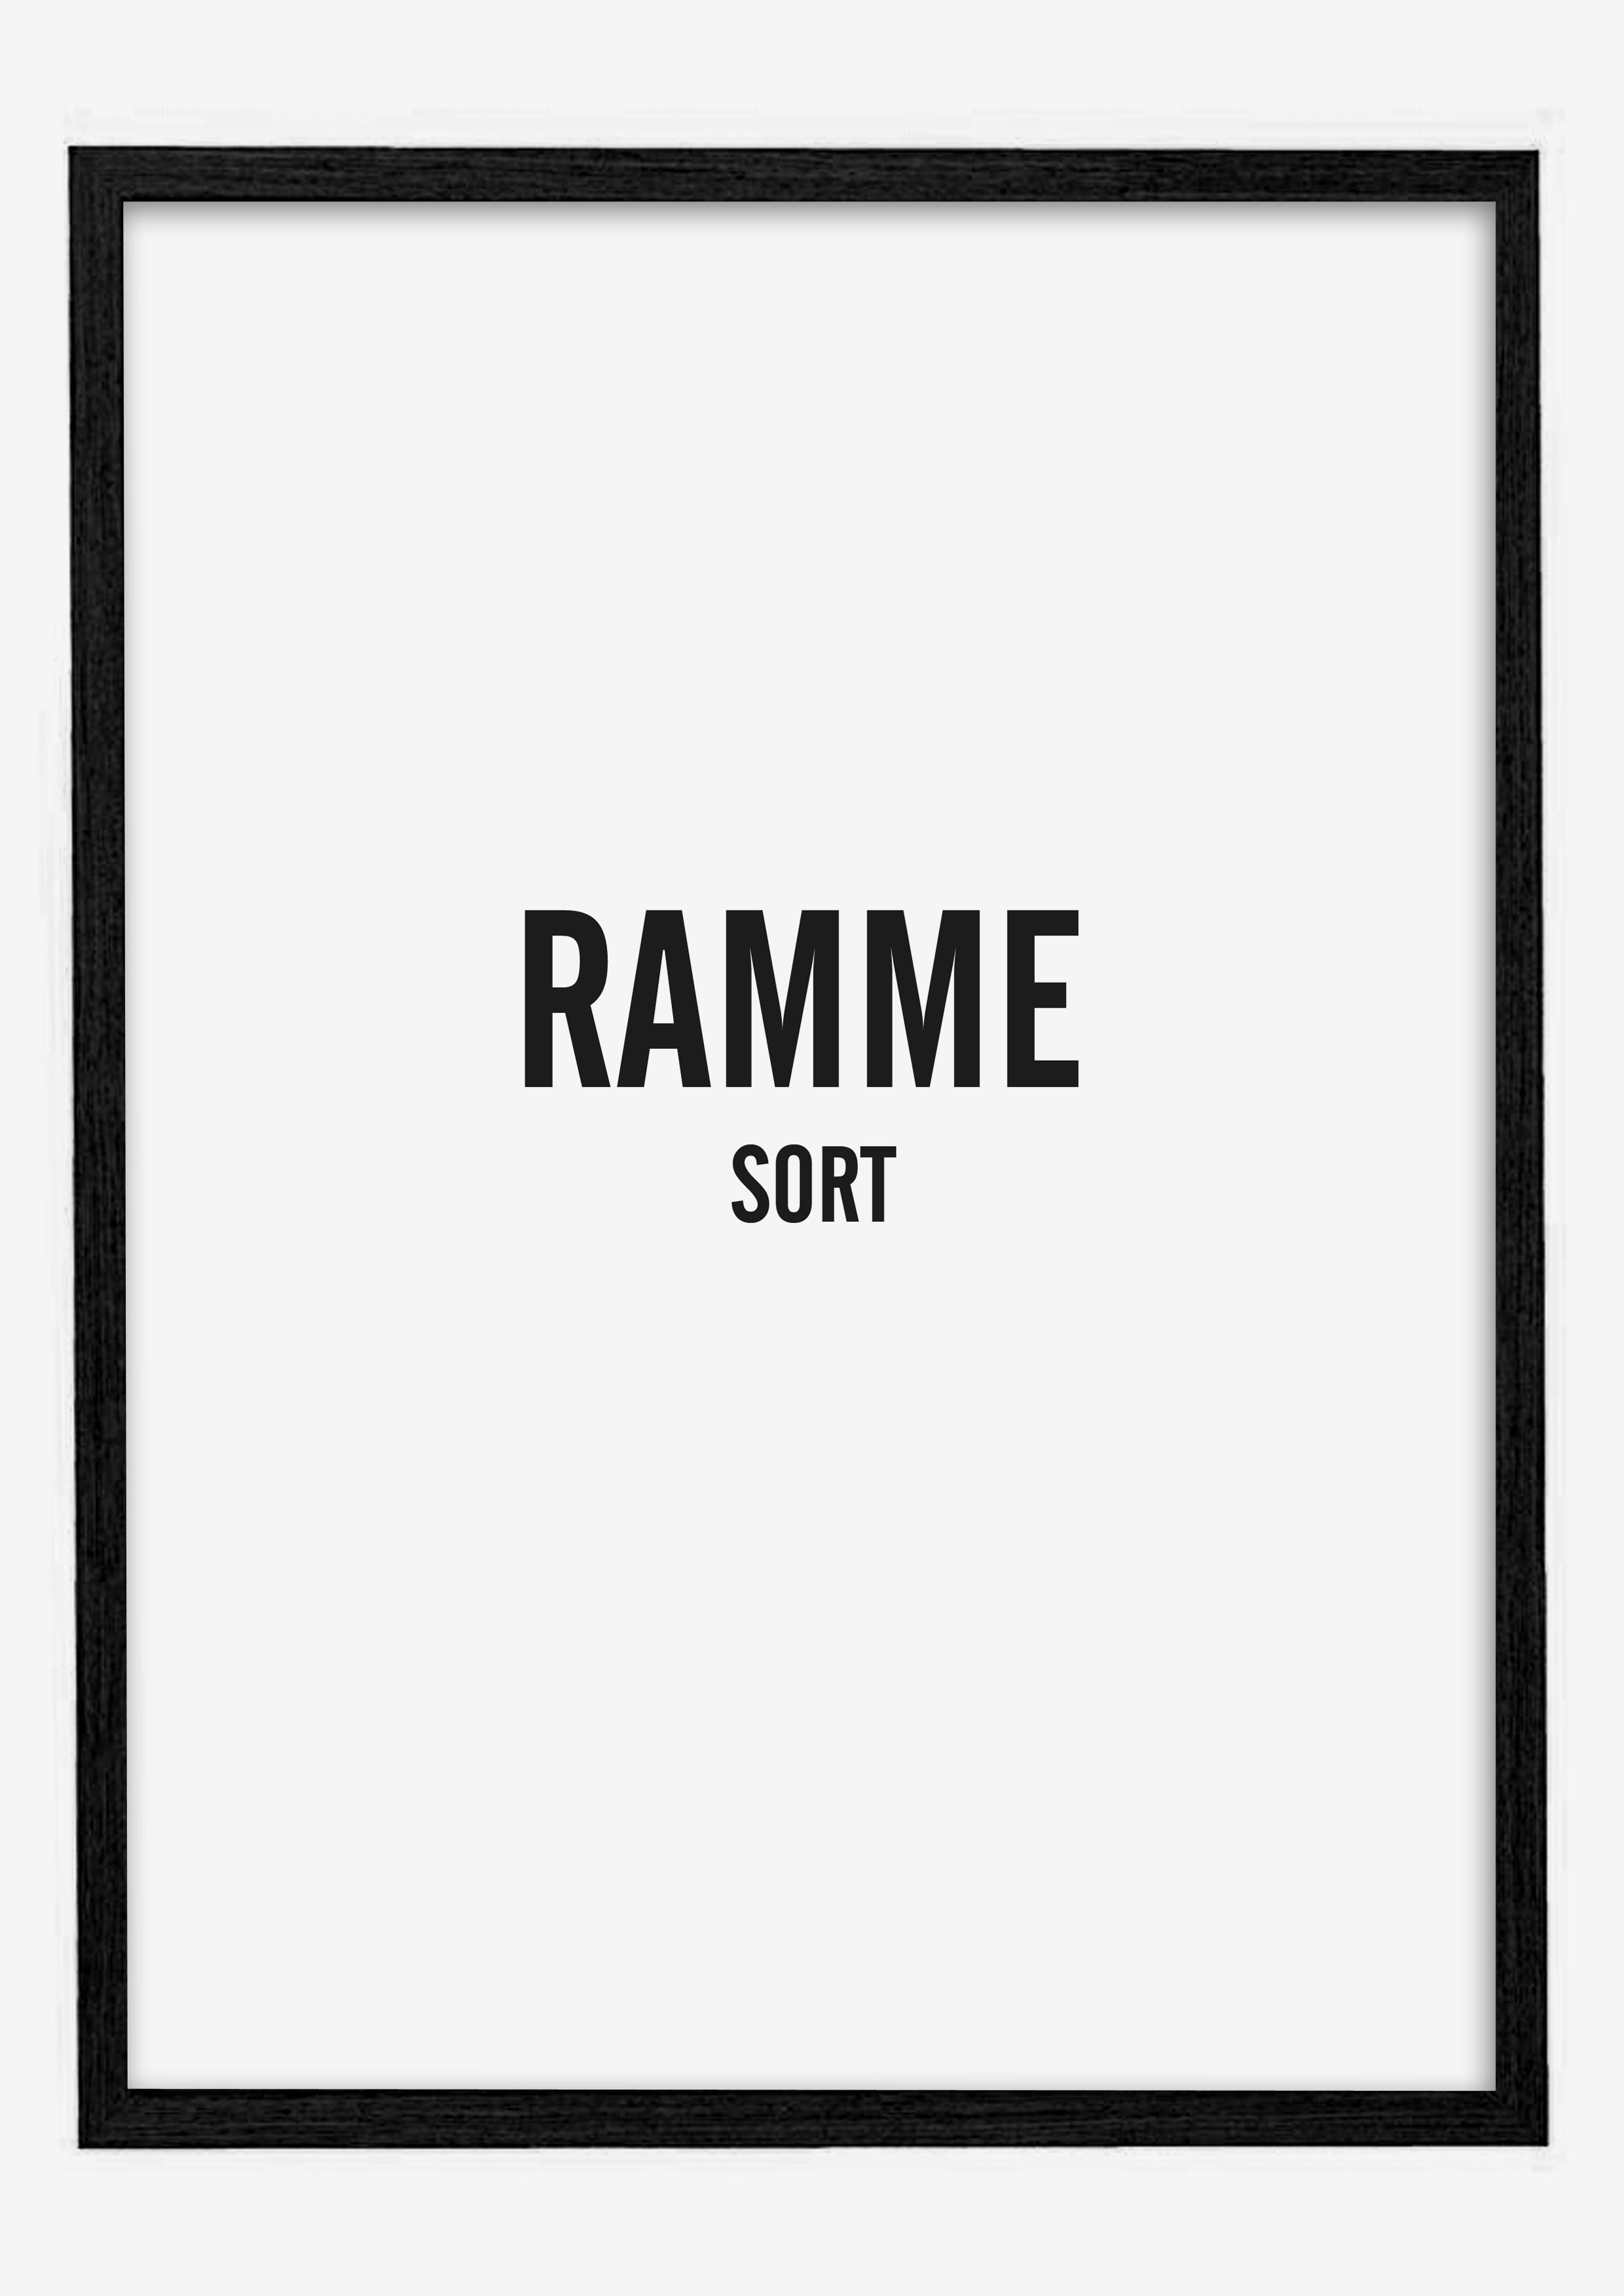 Ramme (sort)